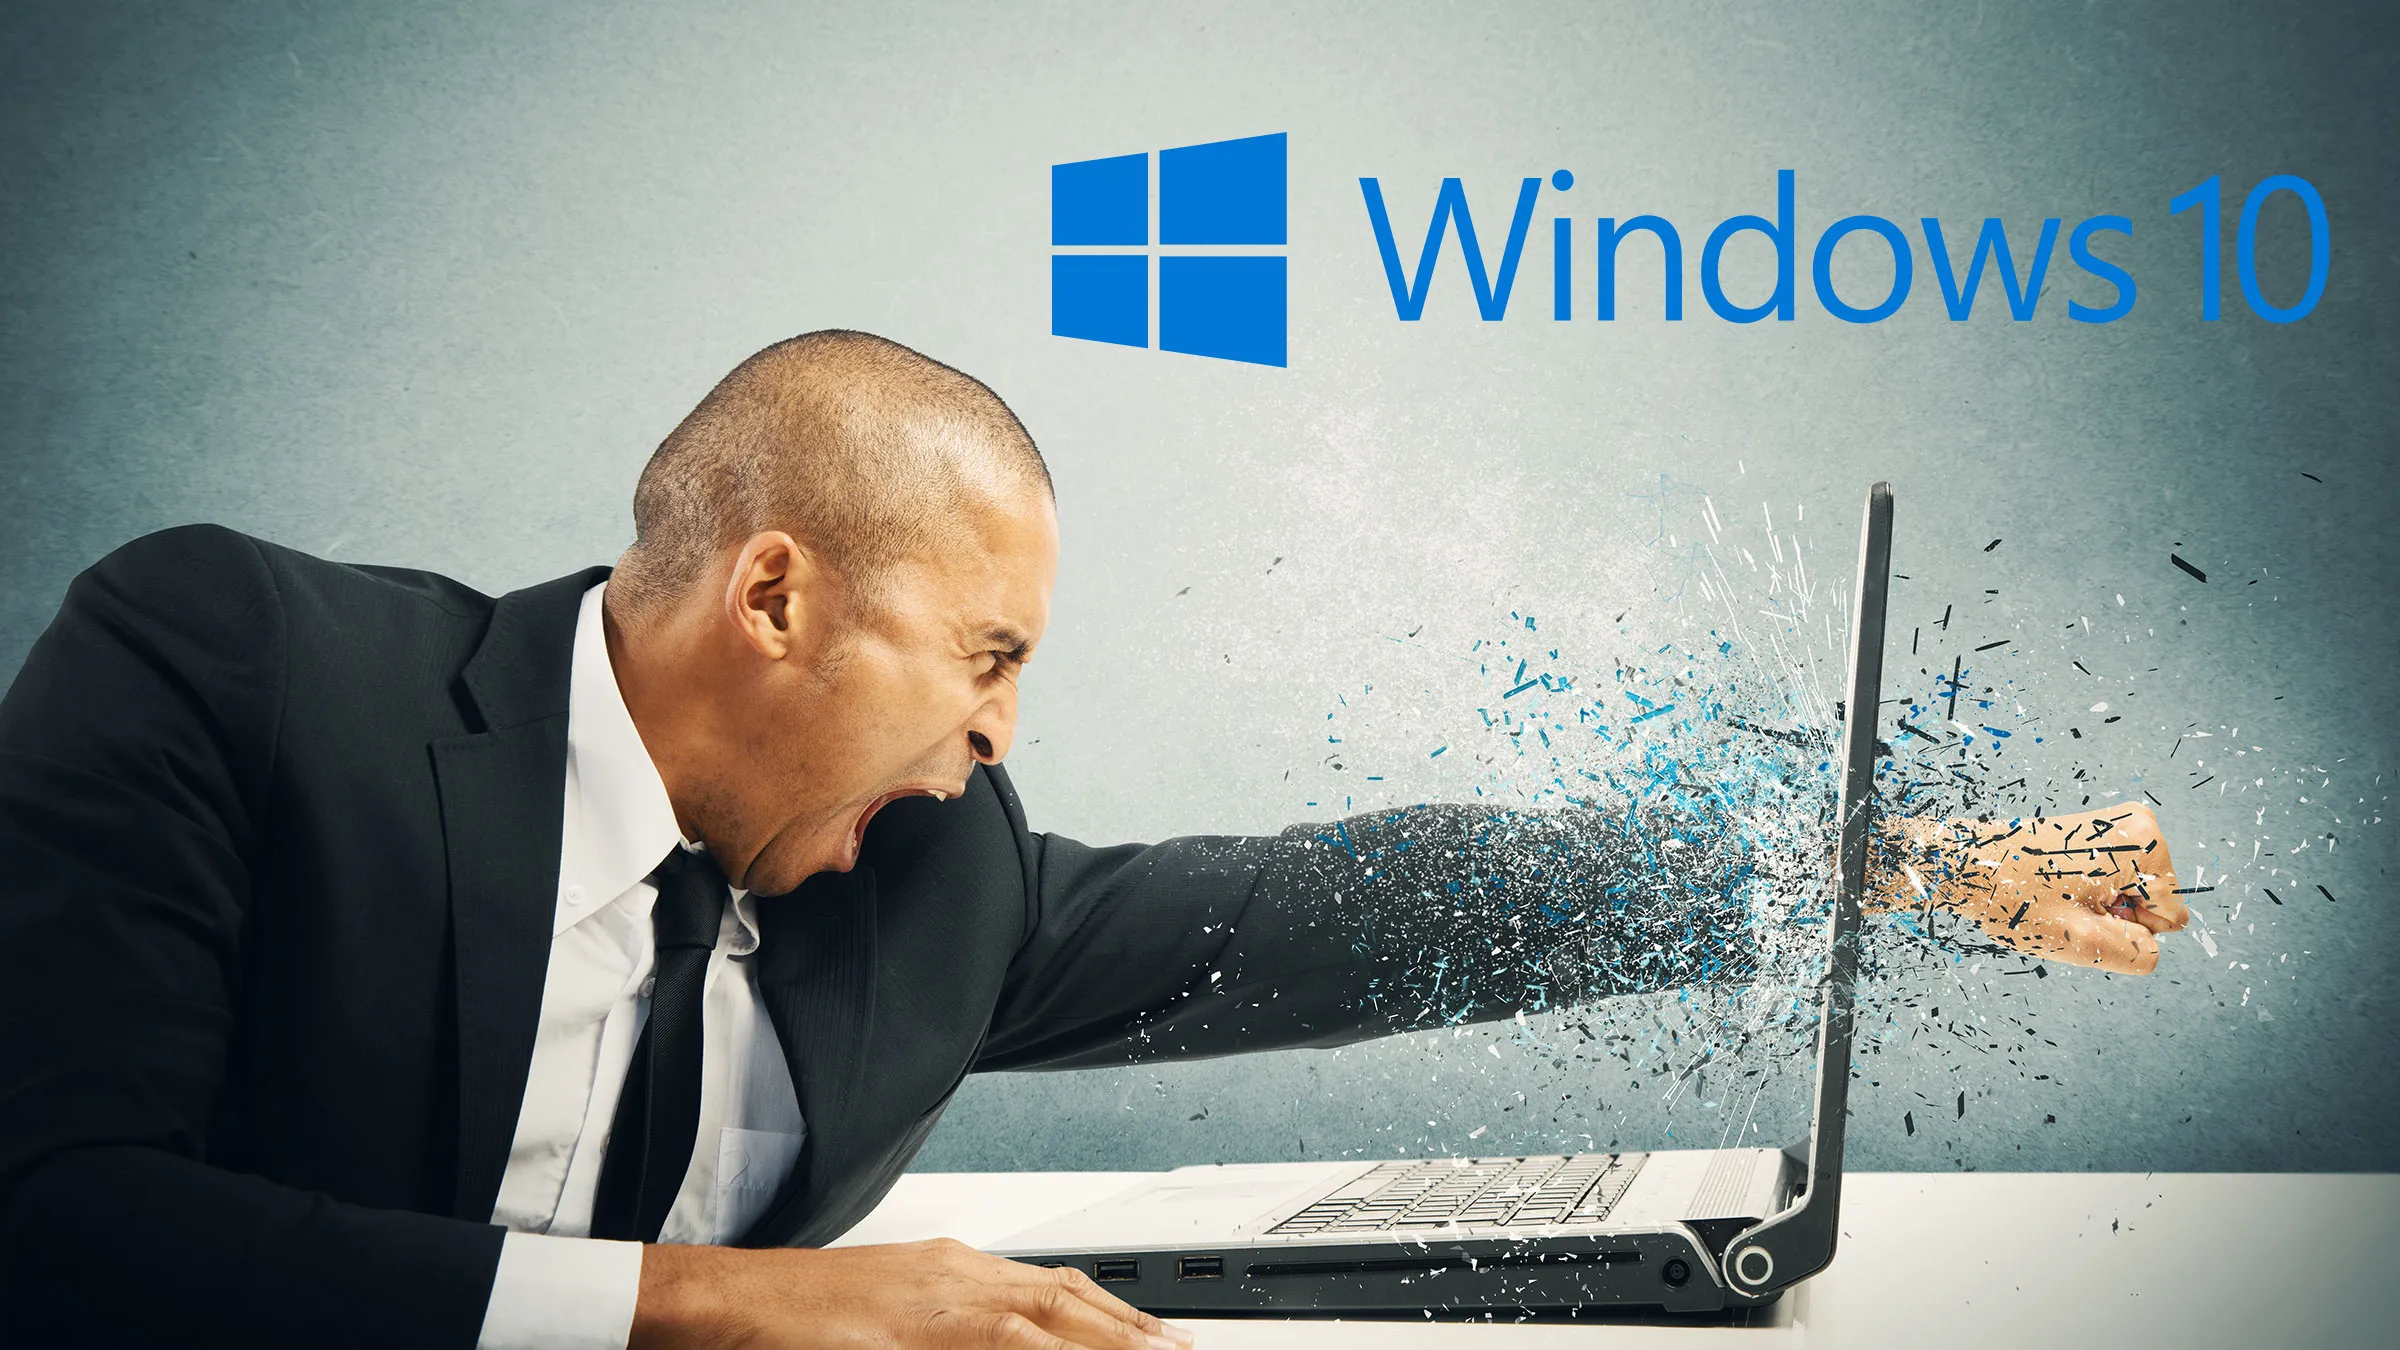 Fin de soporte de Windows 10: Fechas y problemas de no actualizar